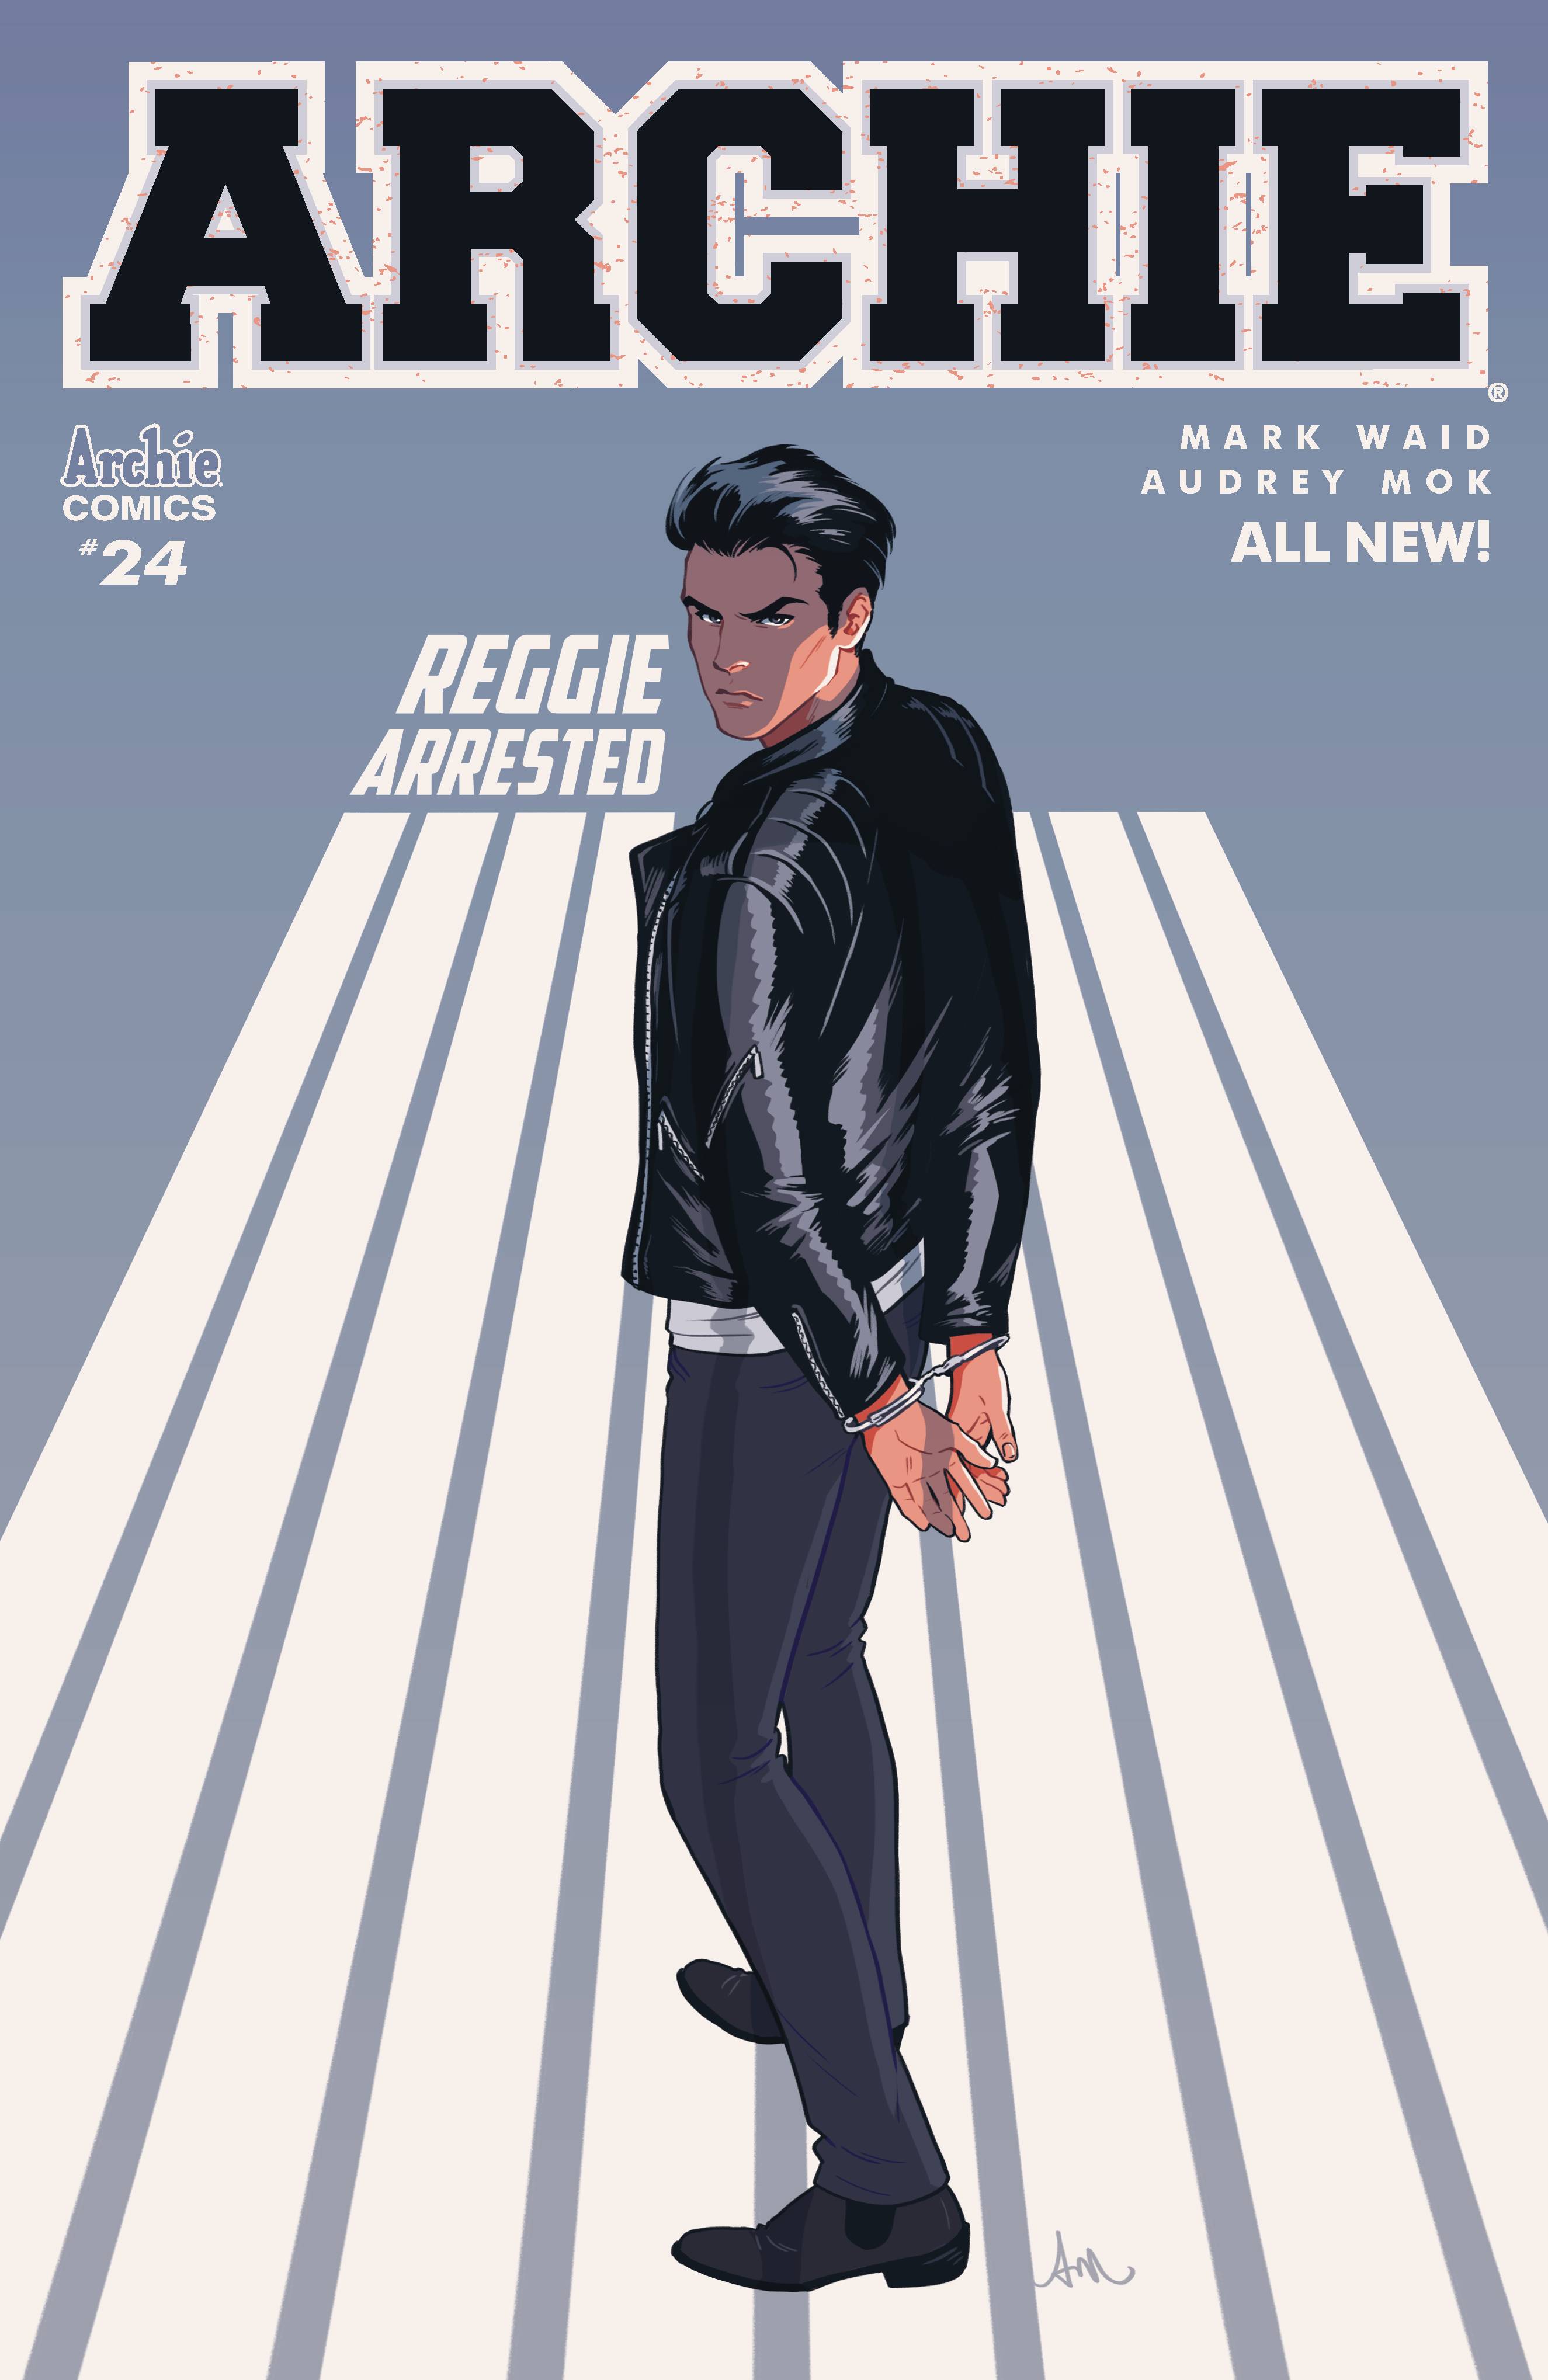 Archie (Vol. 2) 24 Var A Comic Book